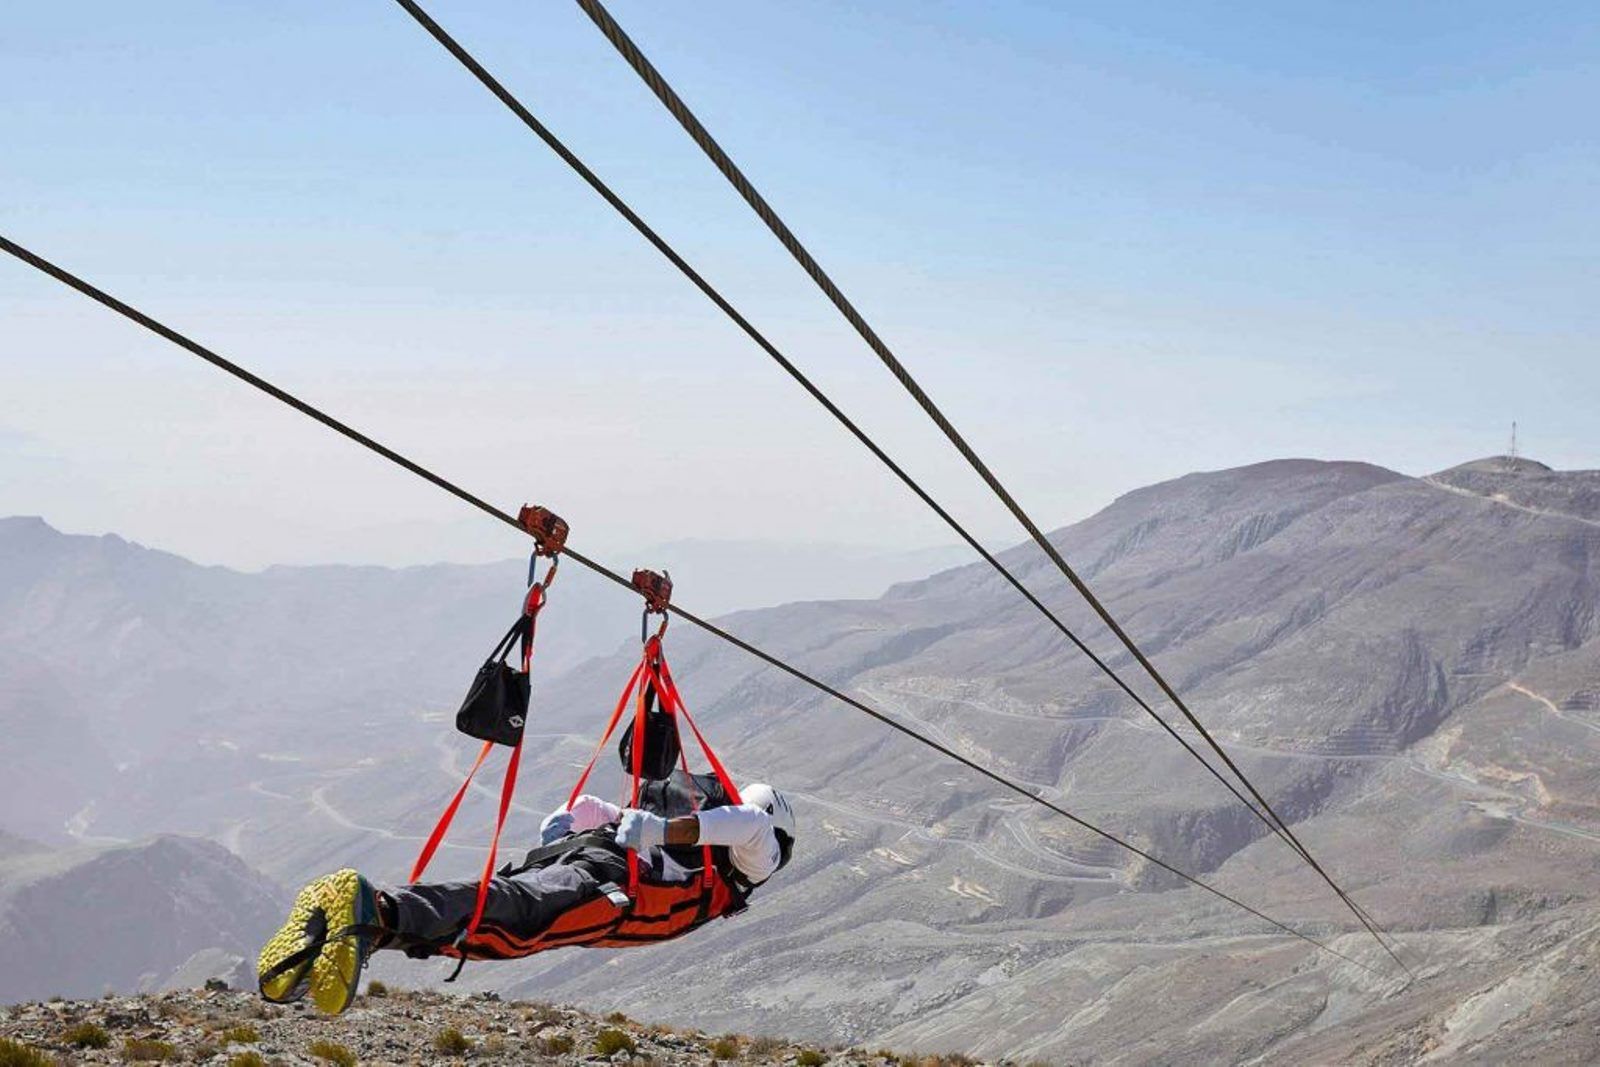 Imagen del tour: Tirolina de Jebel Jais